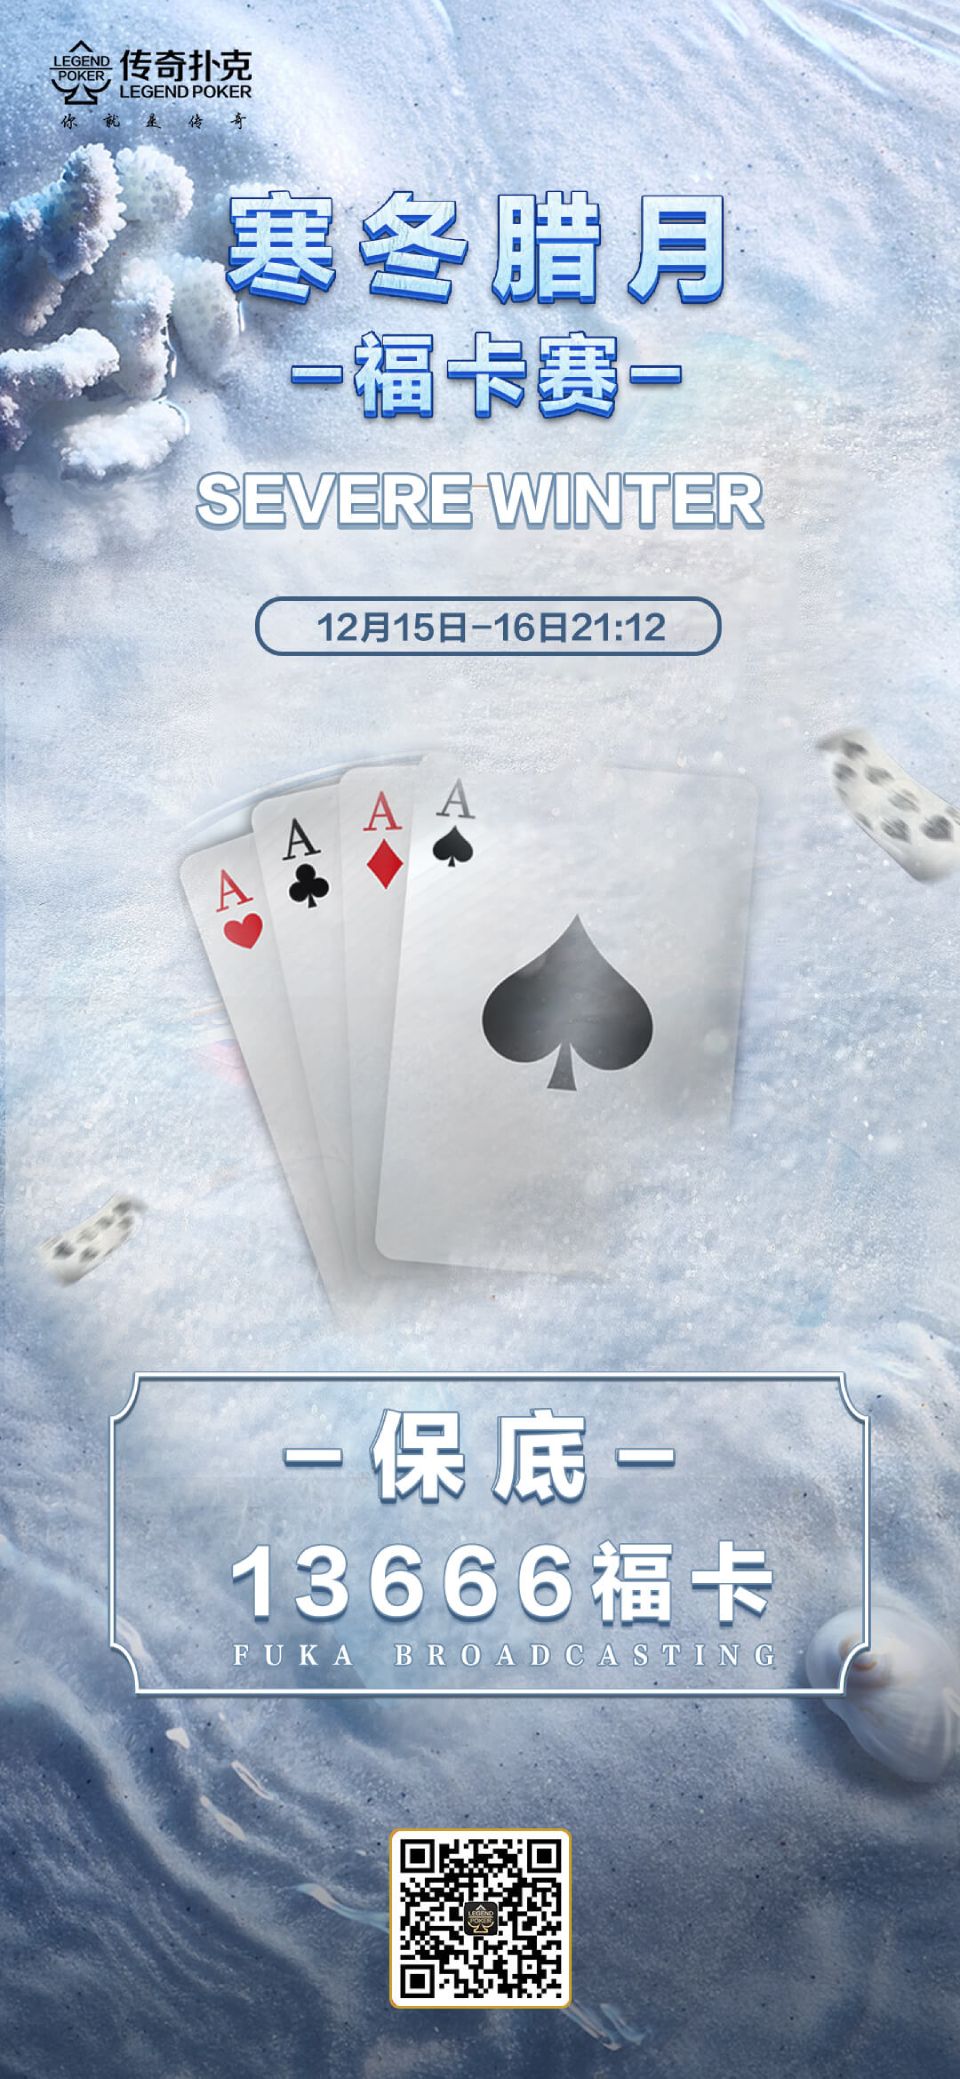 传奇扑克寒冬腊月福卡赛-每场保底13666福卡